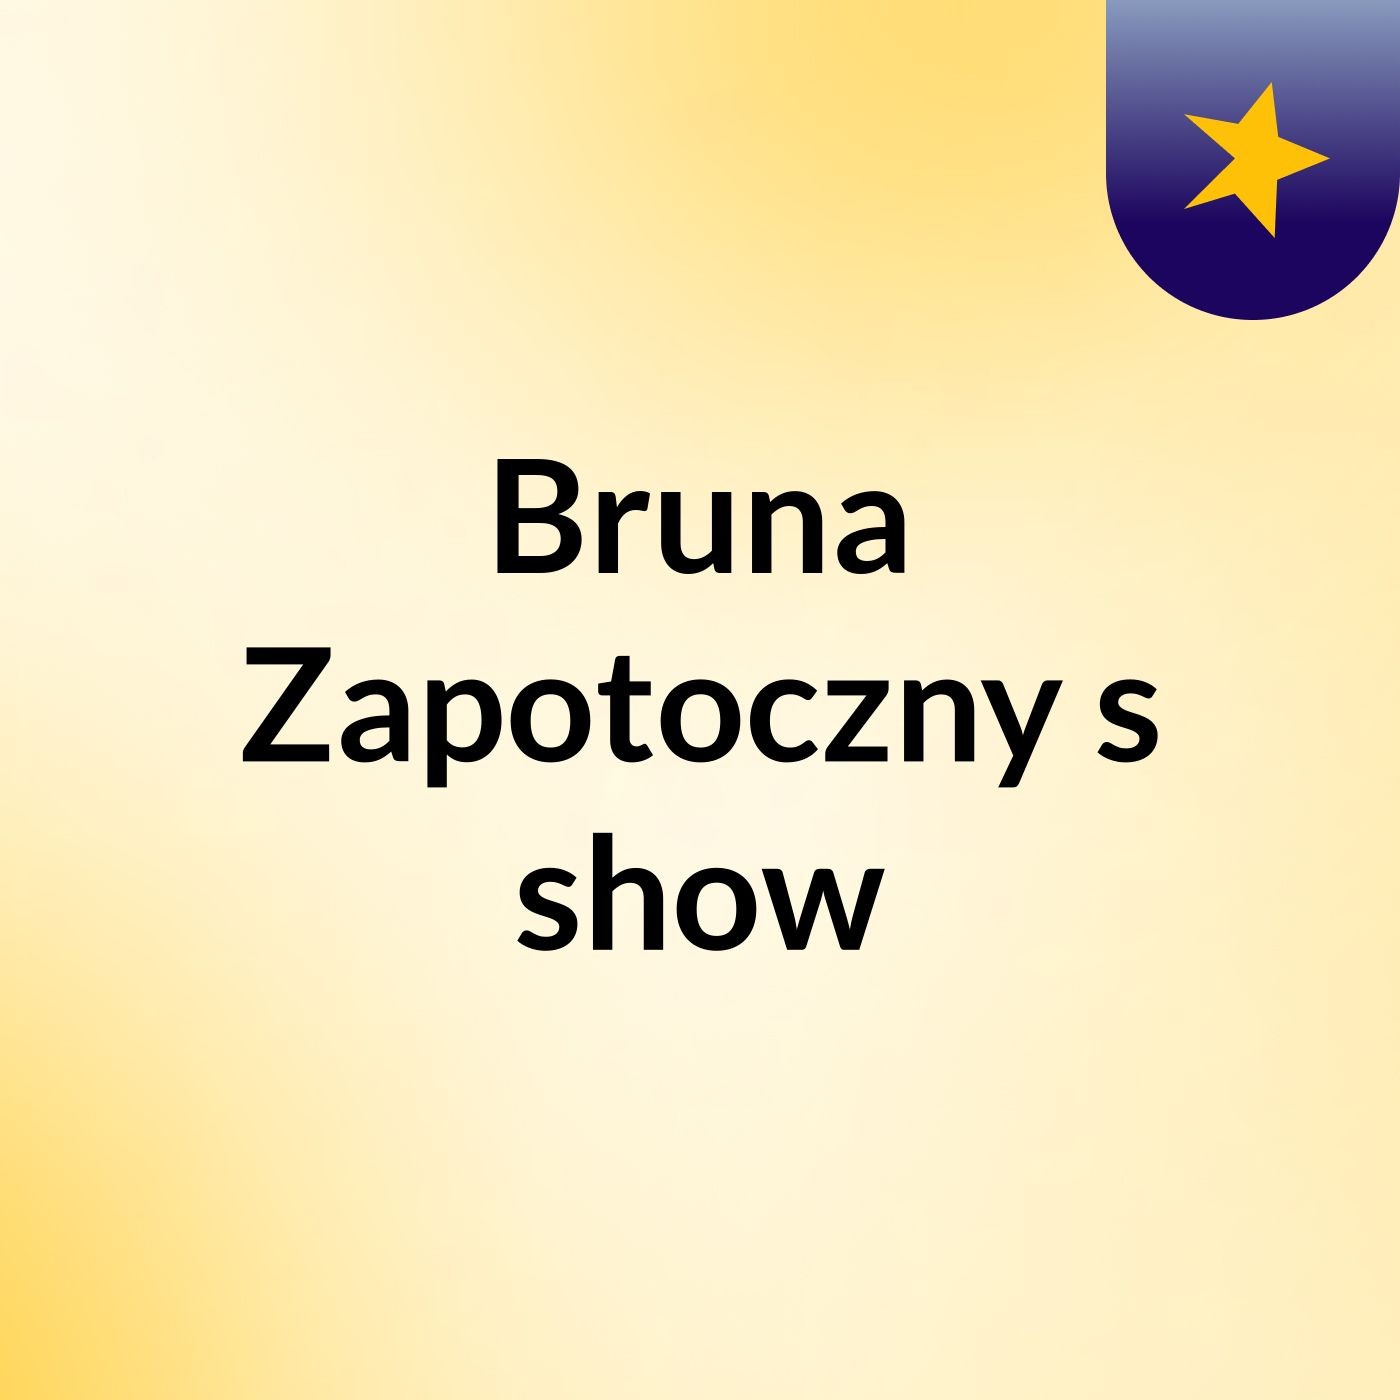 Bruna Zapotoczny's show